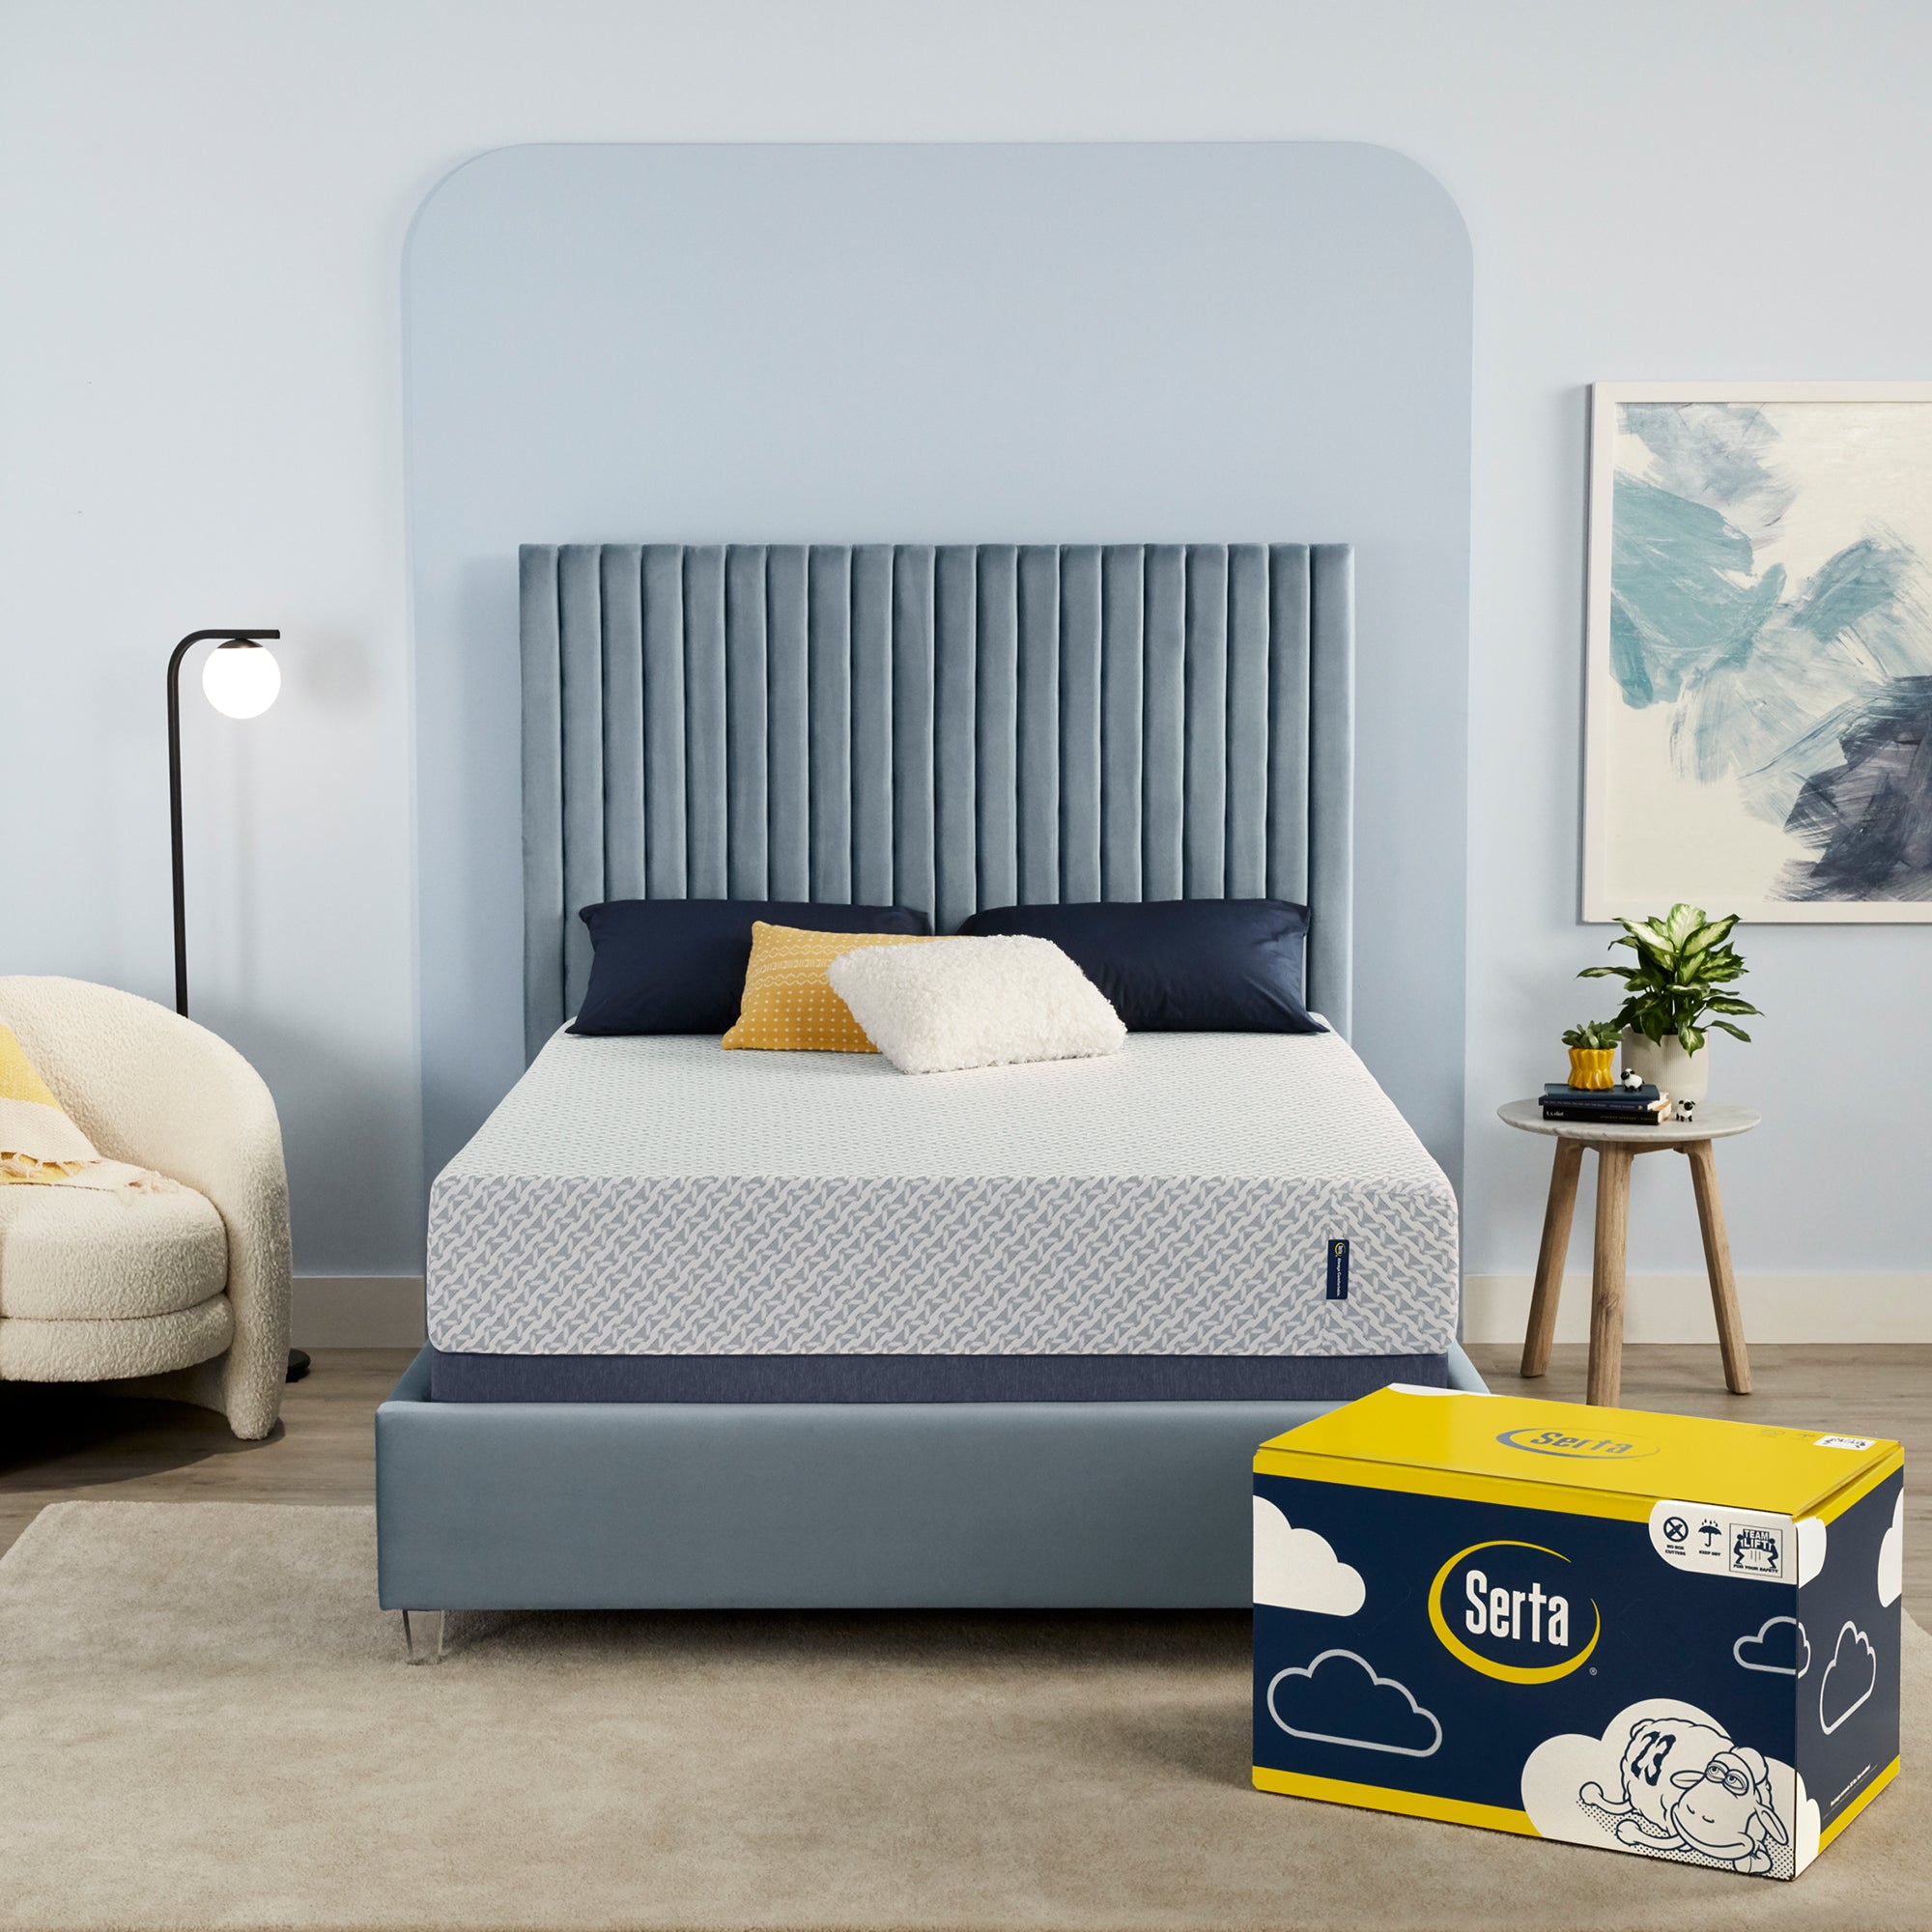 Soft Store Memory Foam Mattress Roll-Up Guest Bed/Floor Mat, 3